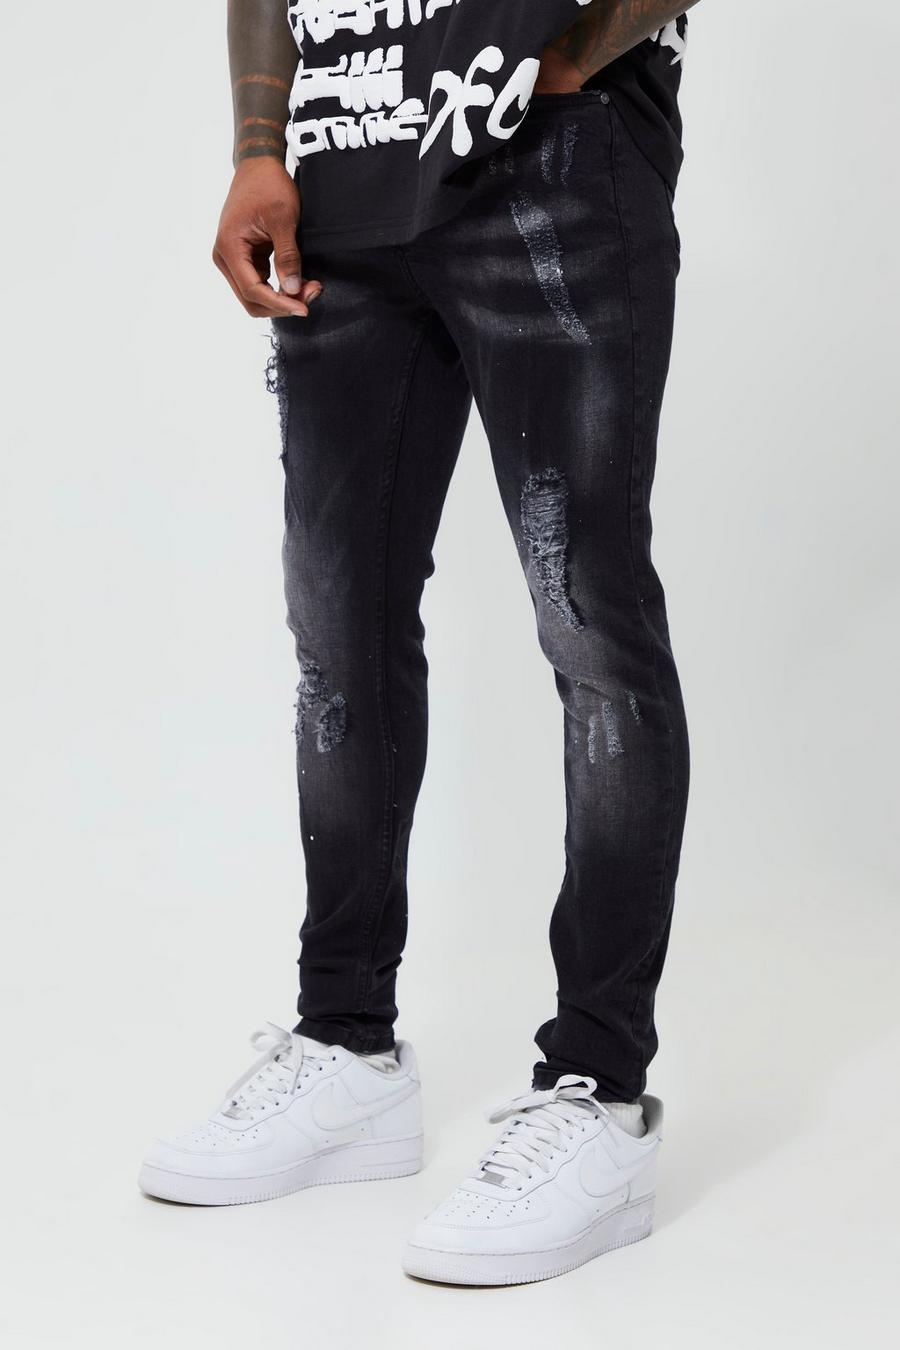 Washed black סופר סקיני ג'ינס עם קרעים וכתמי צבע